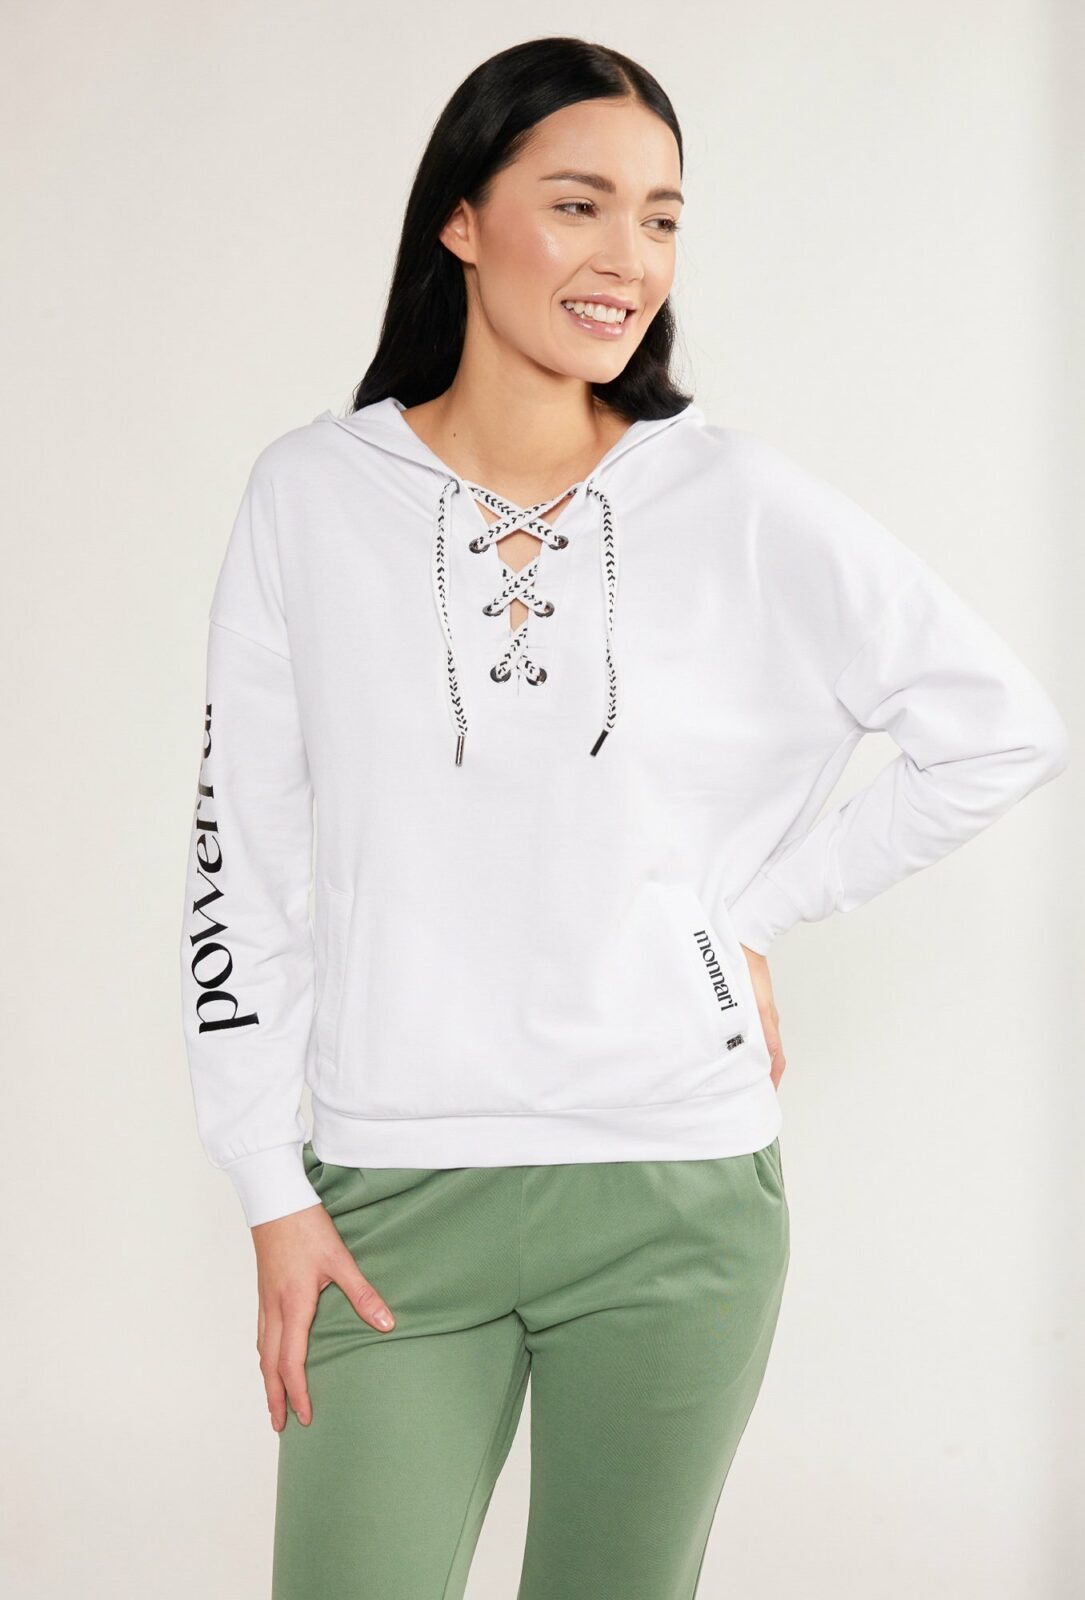 MONNARI Woman's Sweatshirts Sweatshirt With